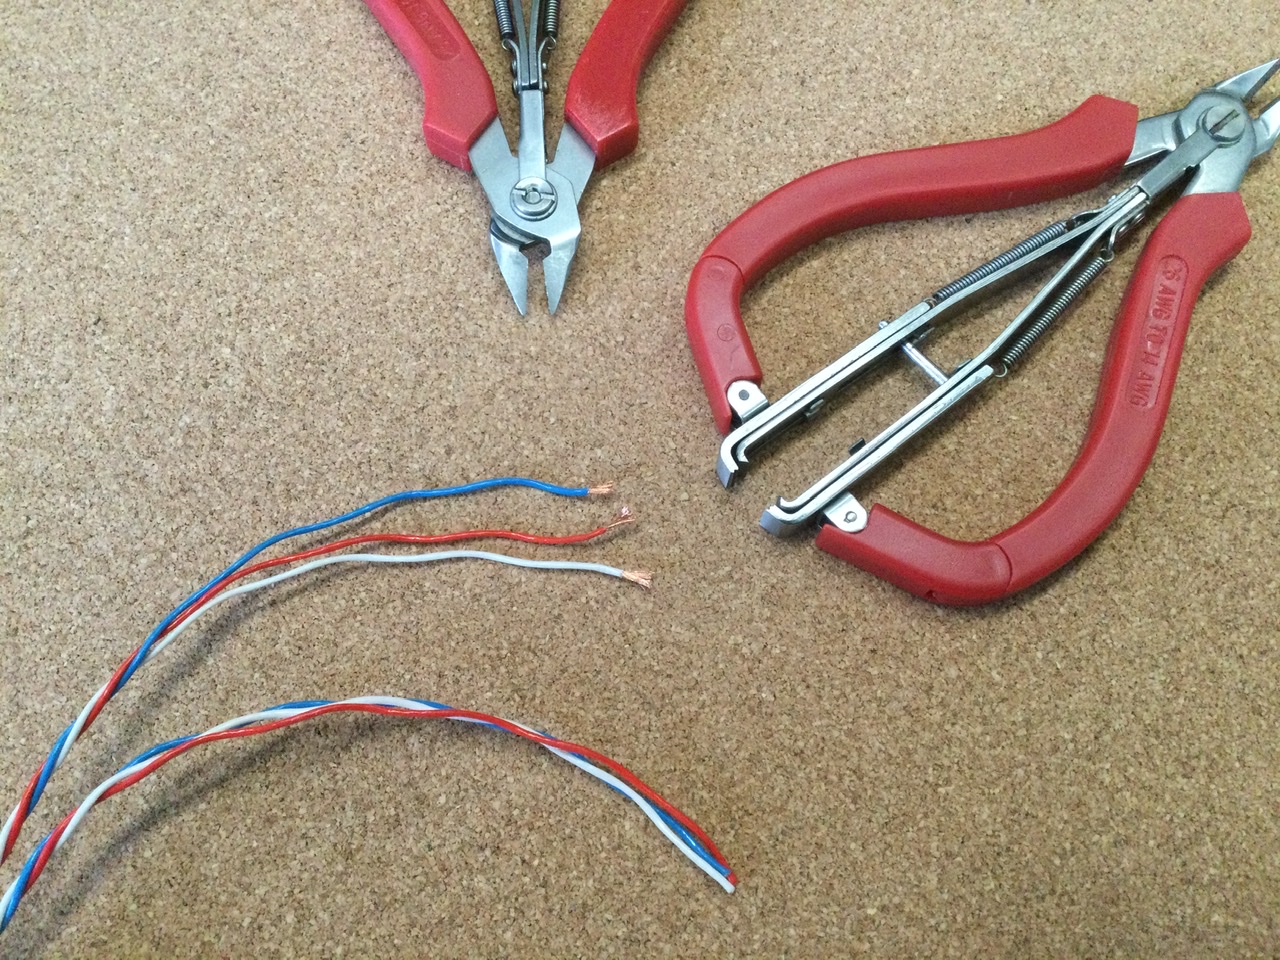 Wire cutter/Stripper